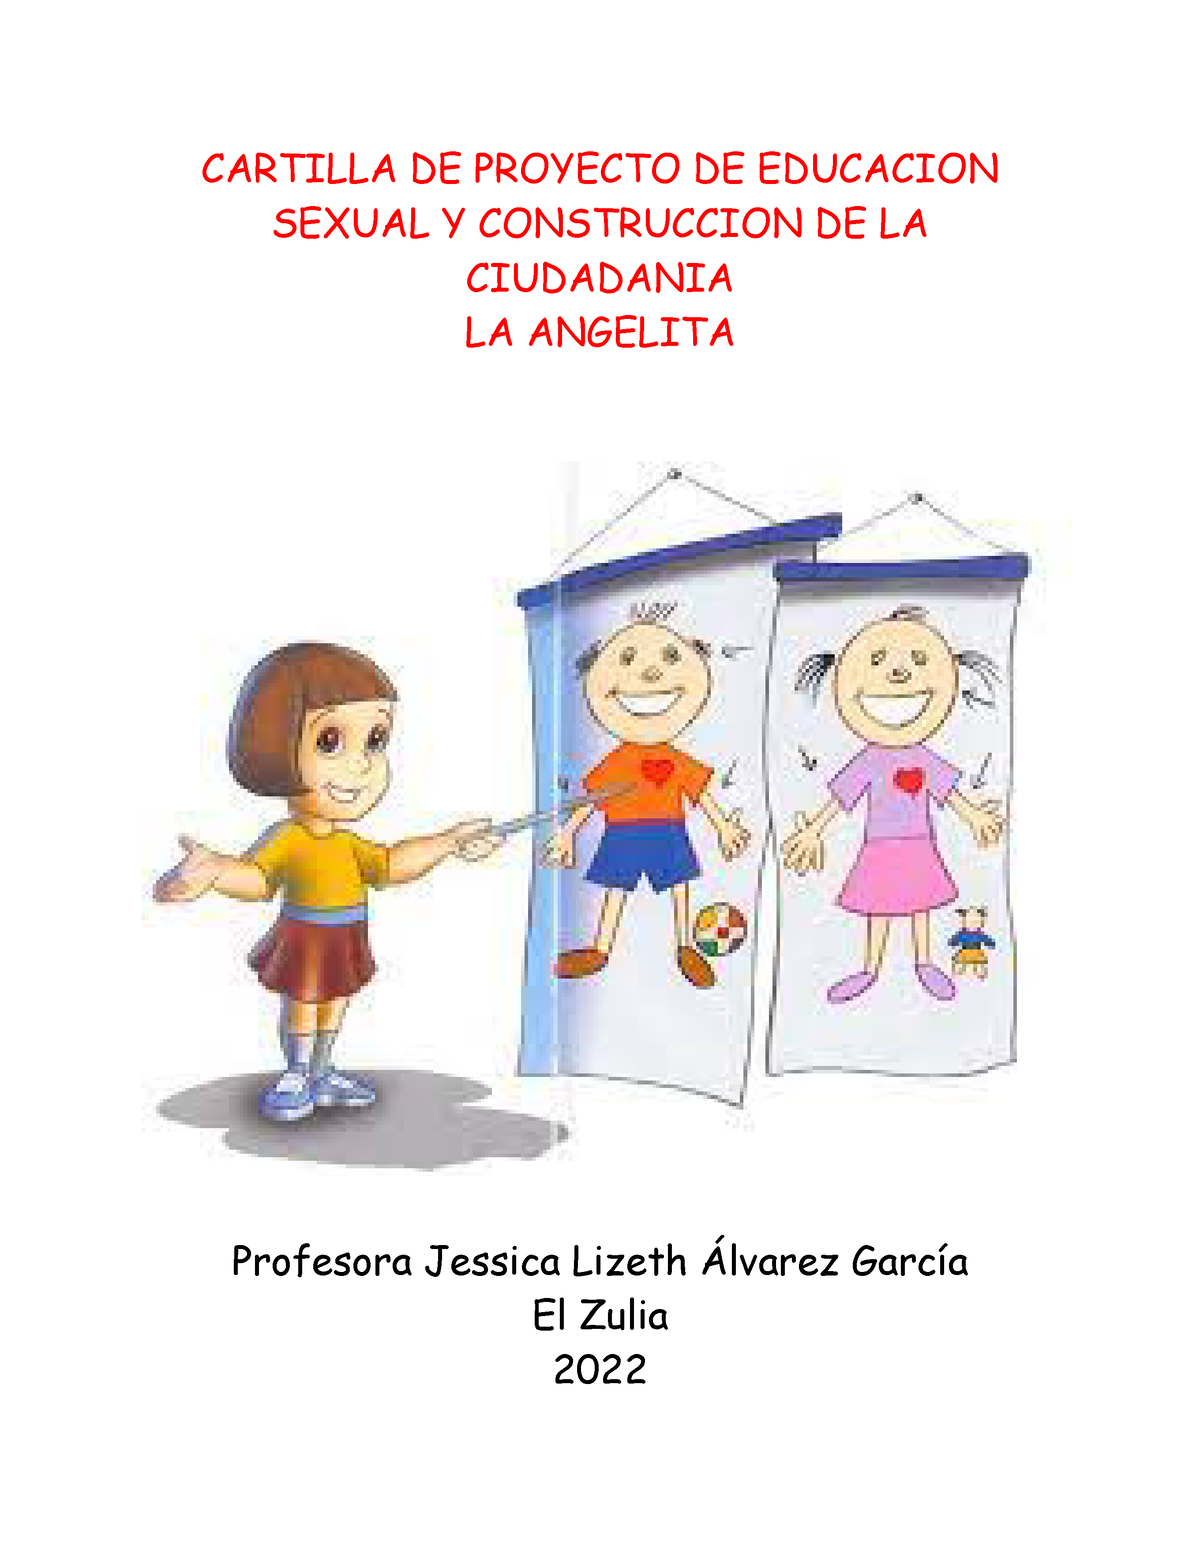 Cartilla De Proyecto De Educacion Sexual Y Construccion De La Ciudadania Cartilla De Proyecto 0145